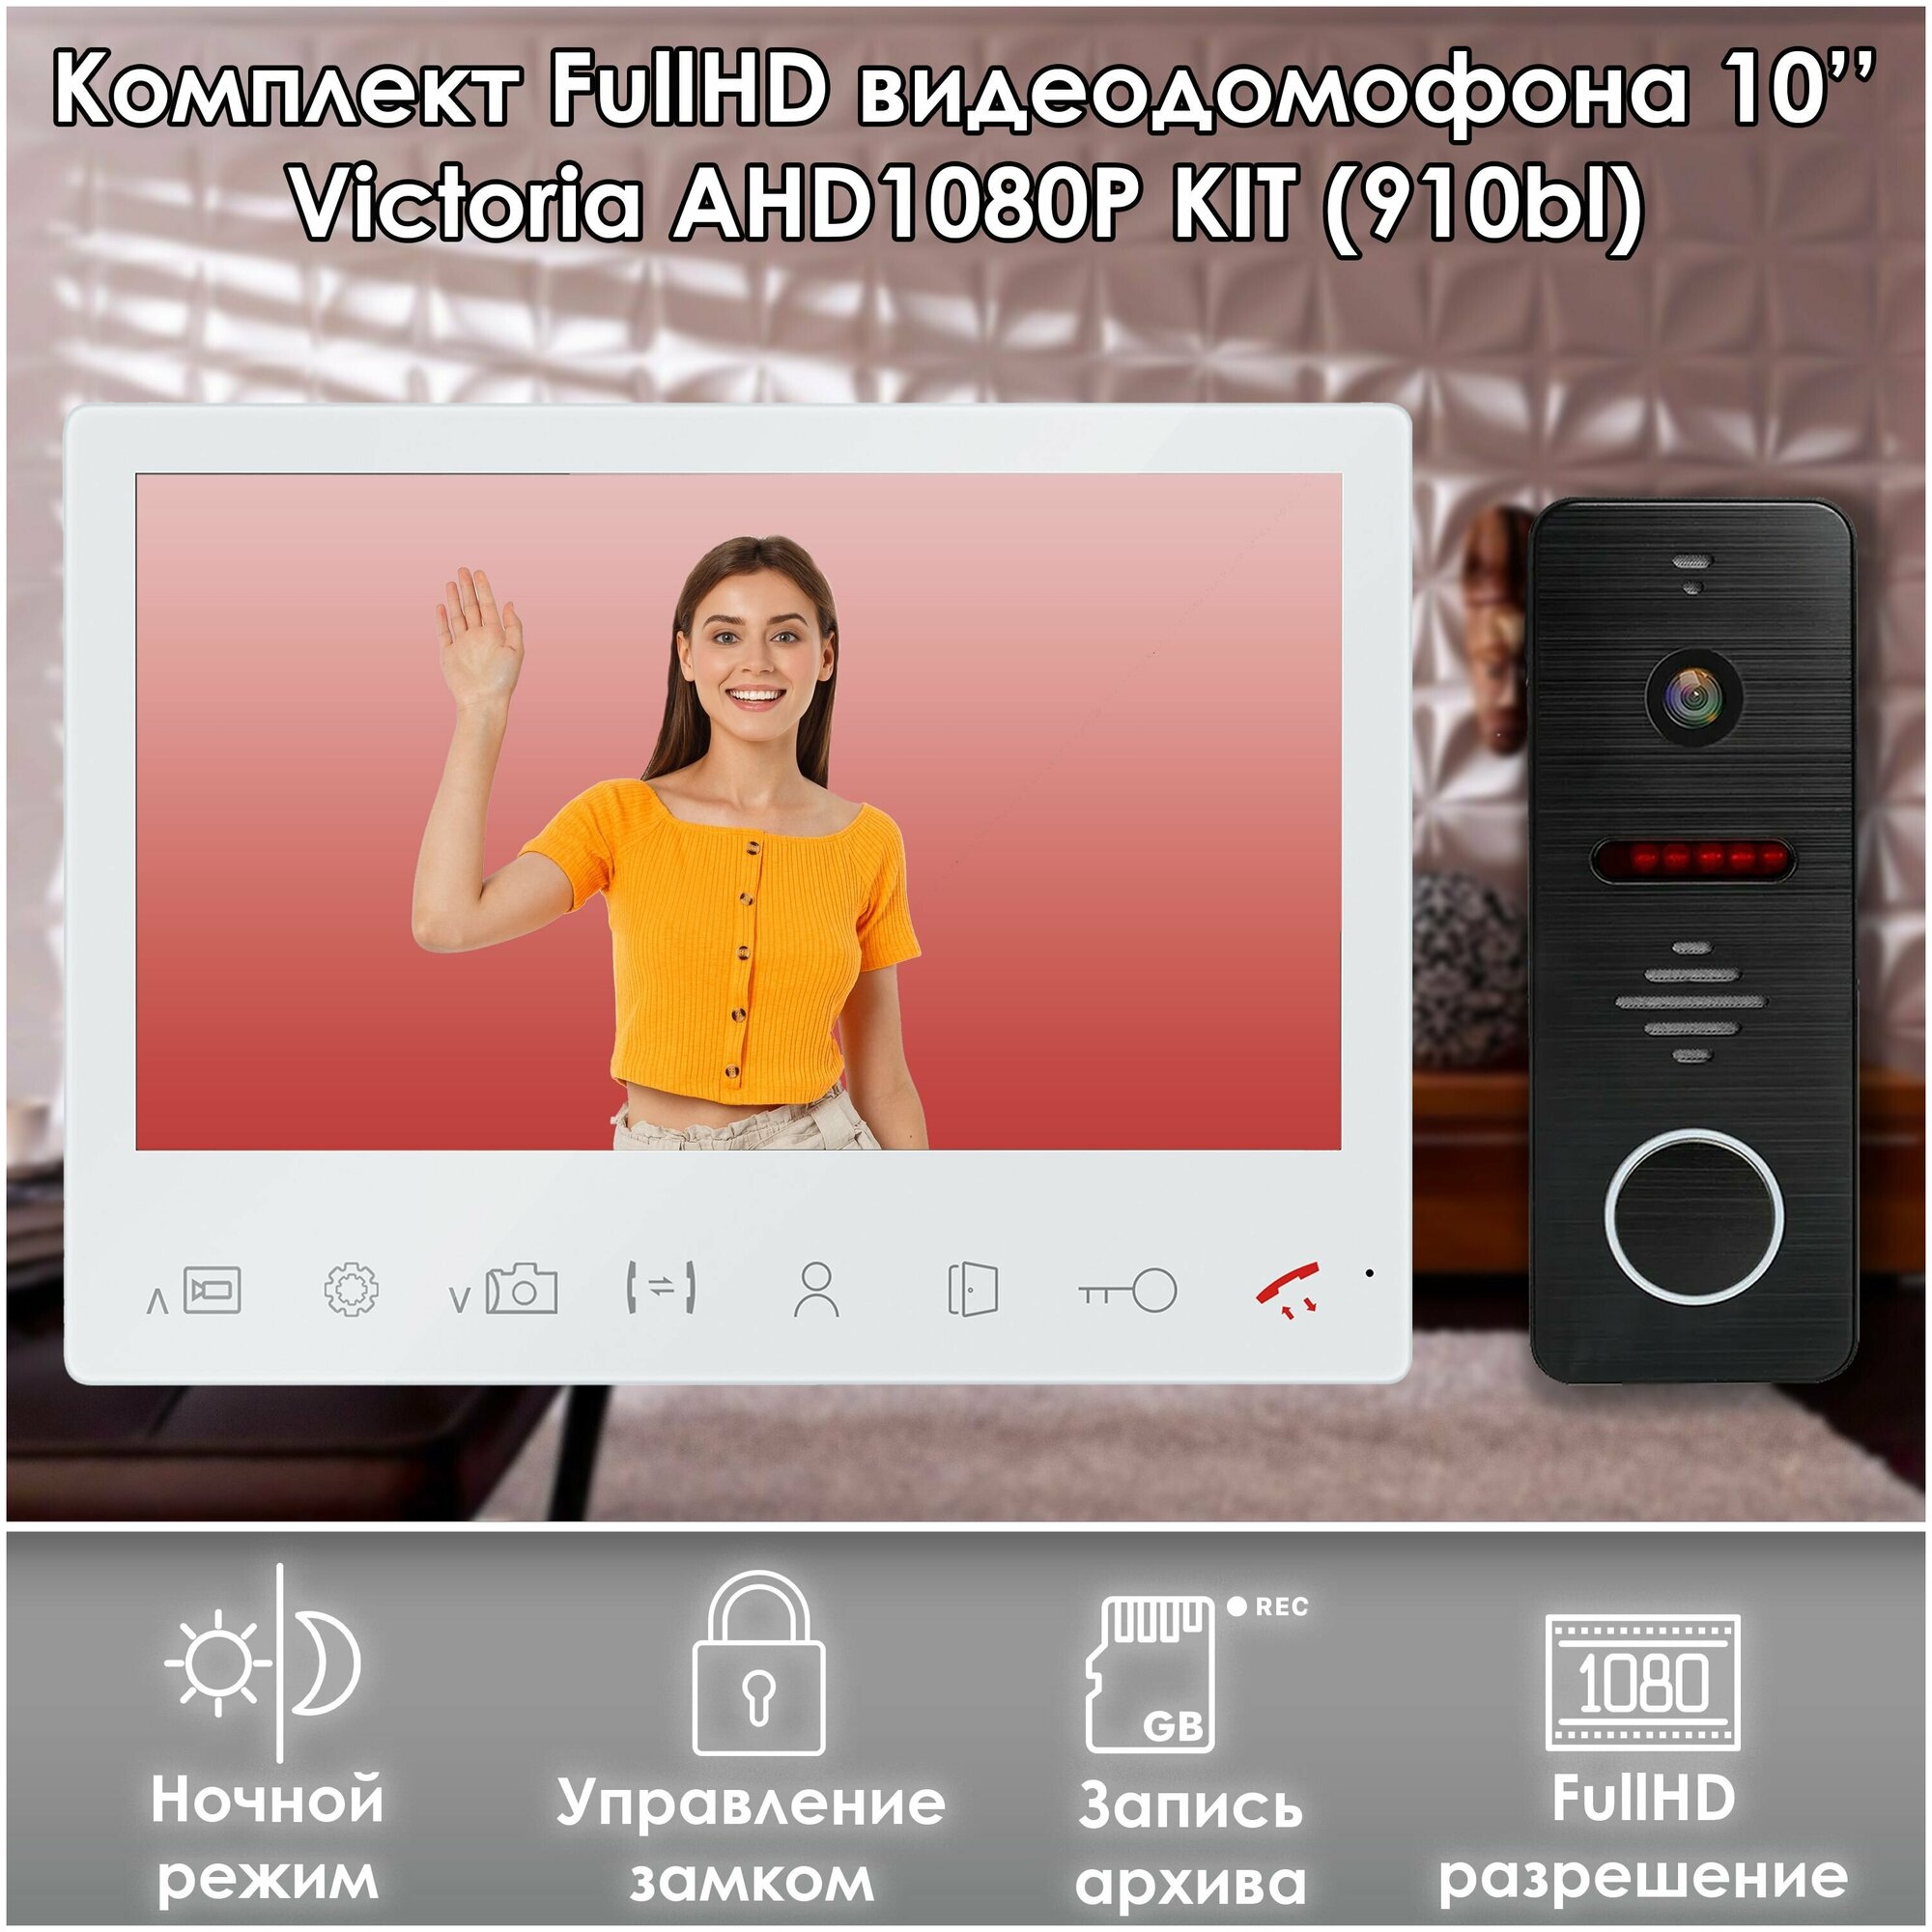 Комплект видеодомофона VICTORIA-KIT+вызывная панель(910bl) Full HD. Экран 10". Запись звонков и движения на SD-карту.